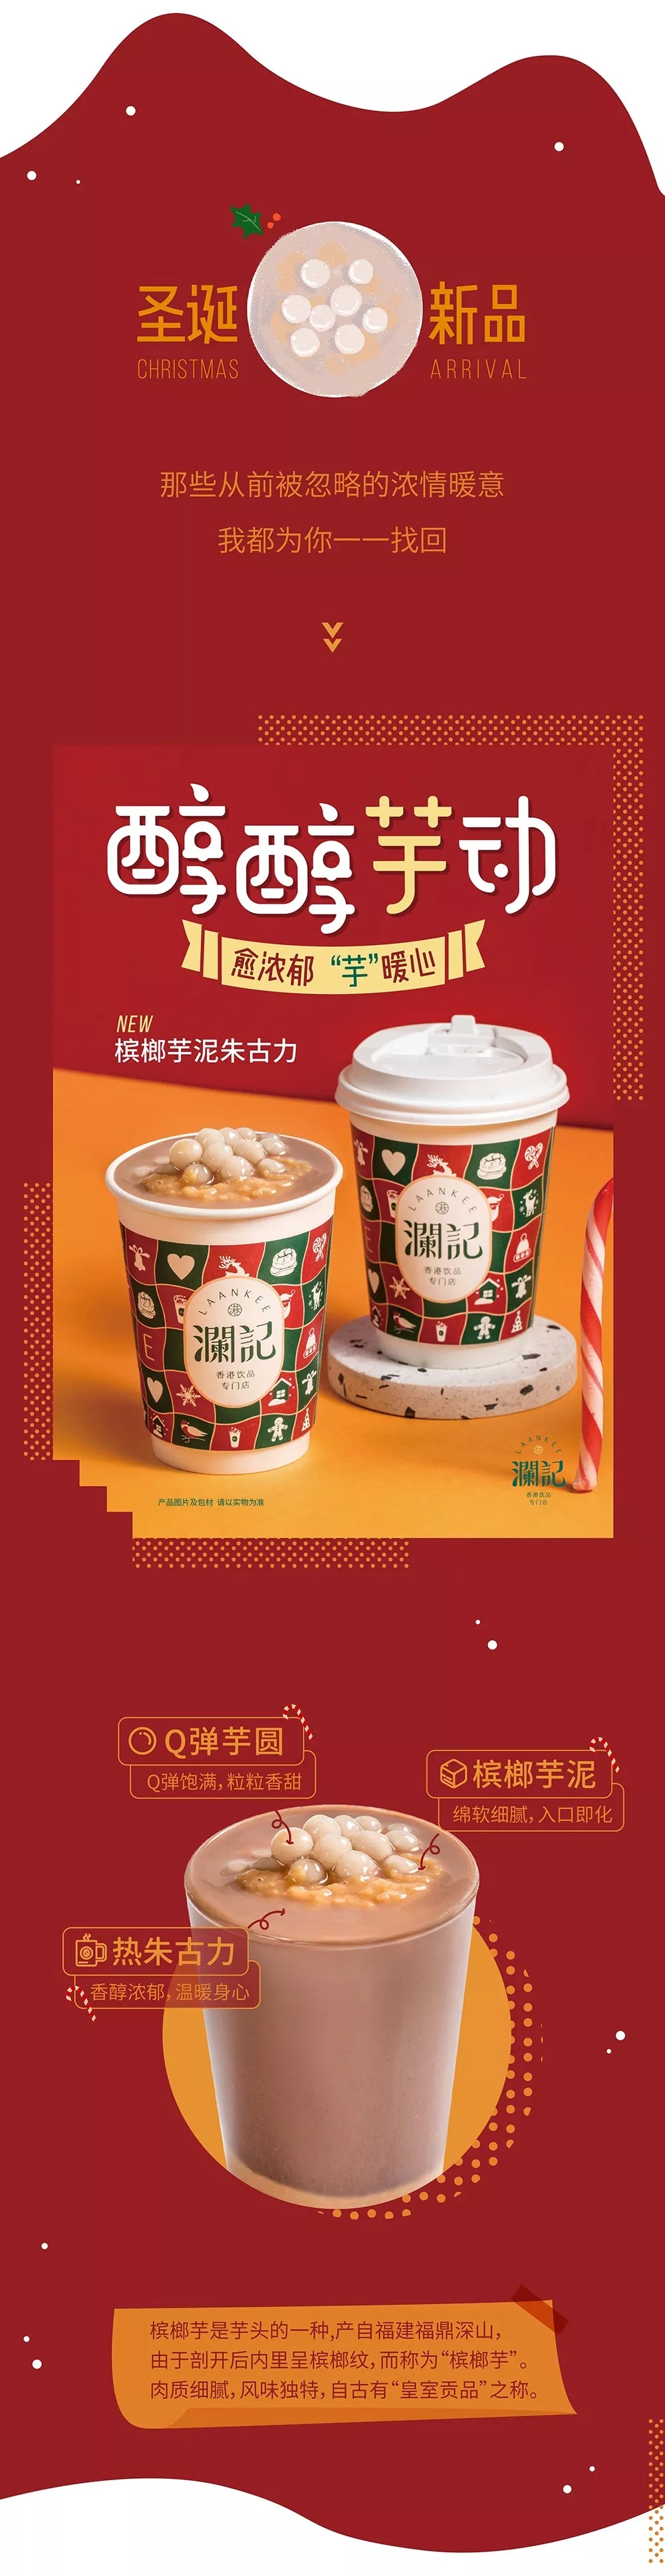 澜记,圣诞,冬季新品,香港饮品节